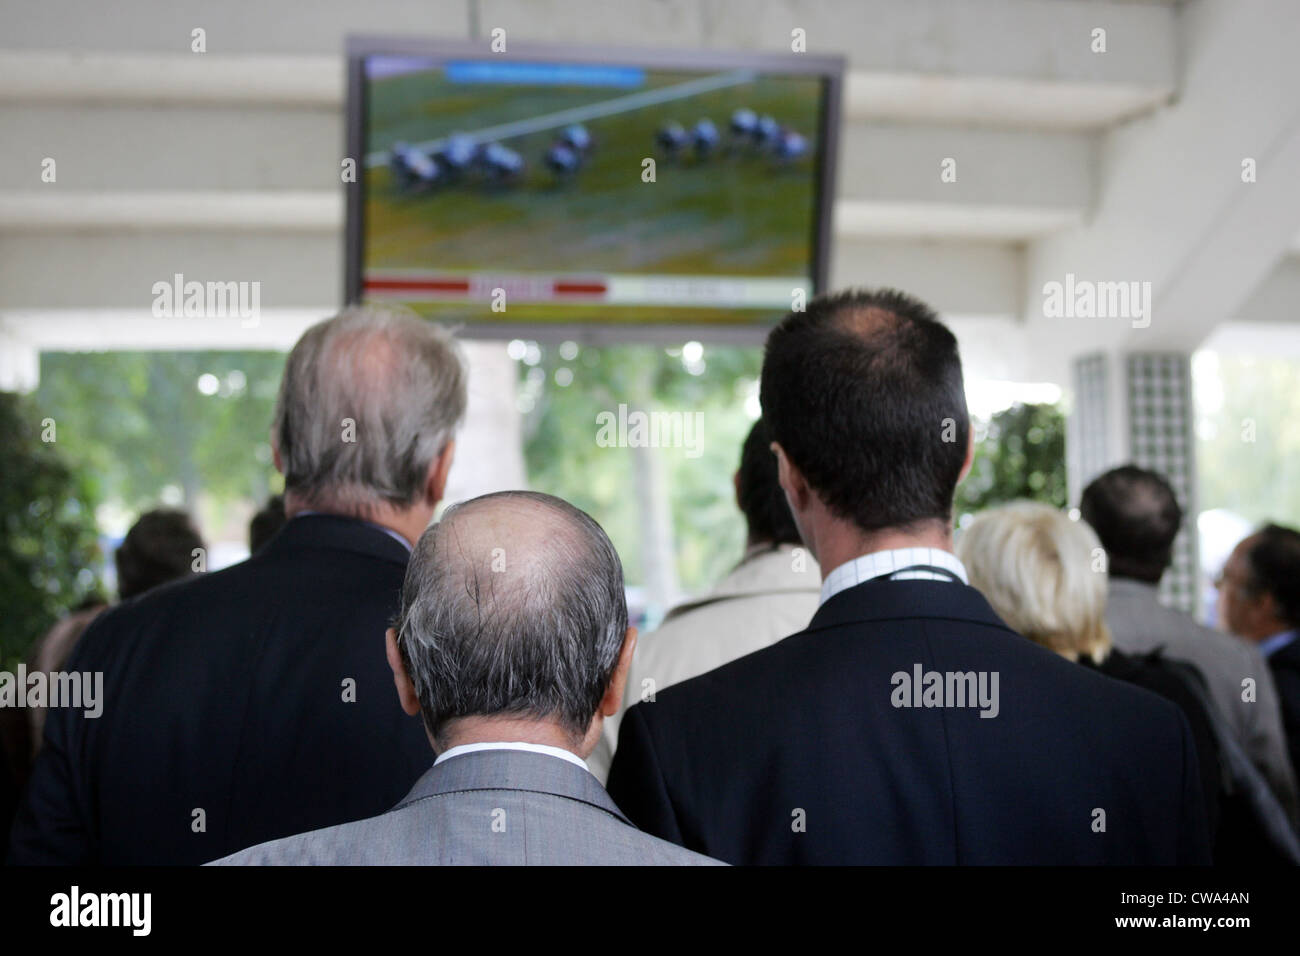 Paris, sehen die Besucher ein Rennen auf dem Monitor verfolgen Stockfoto